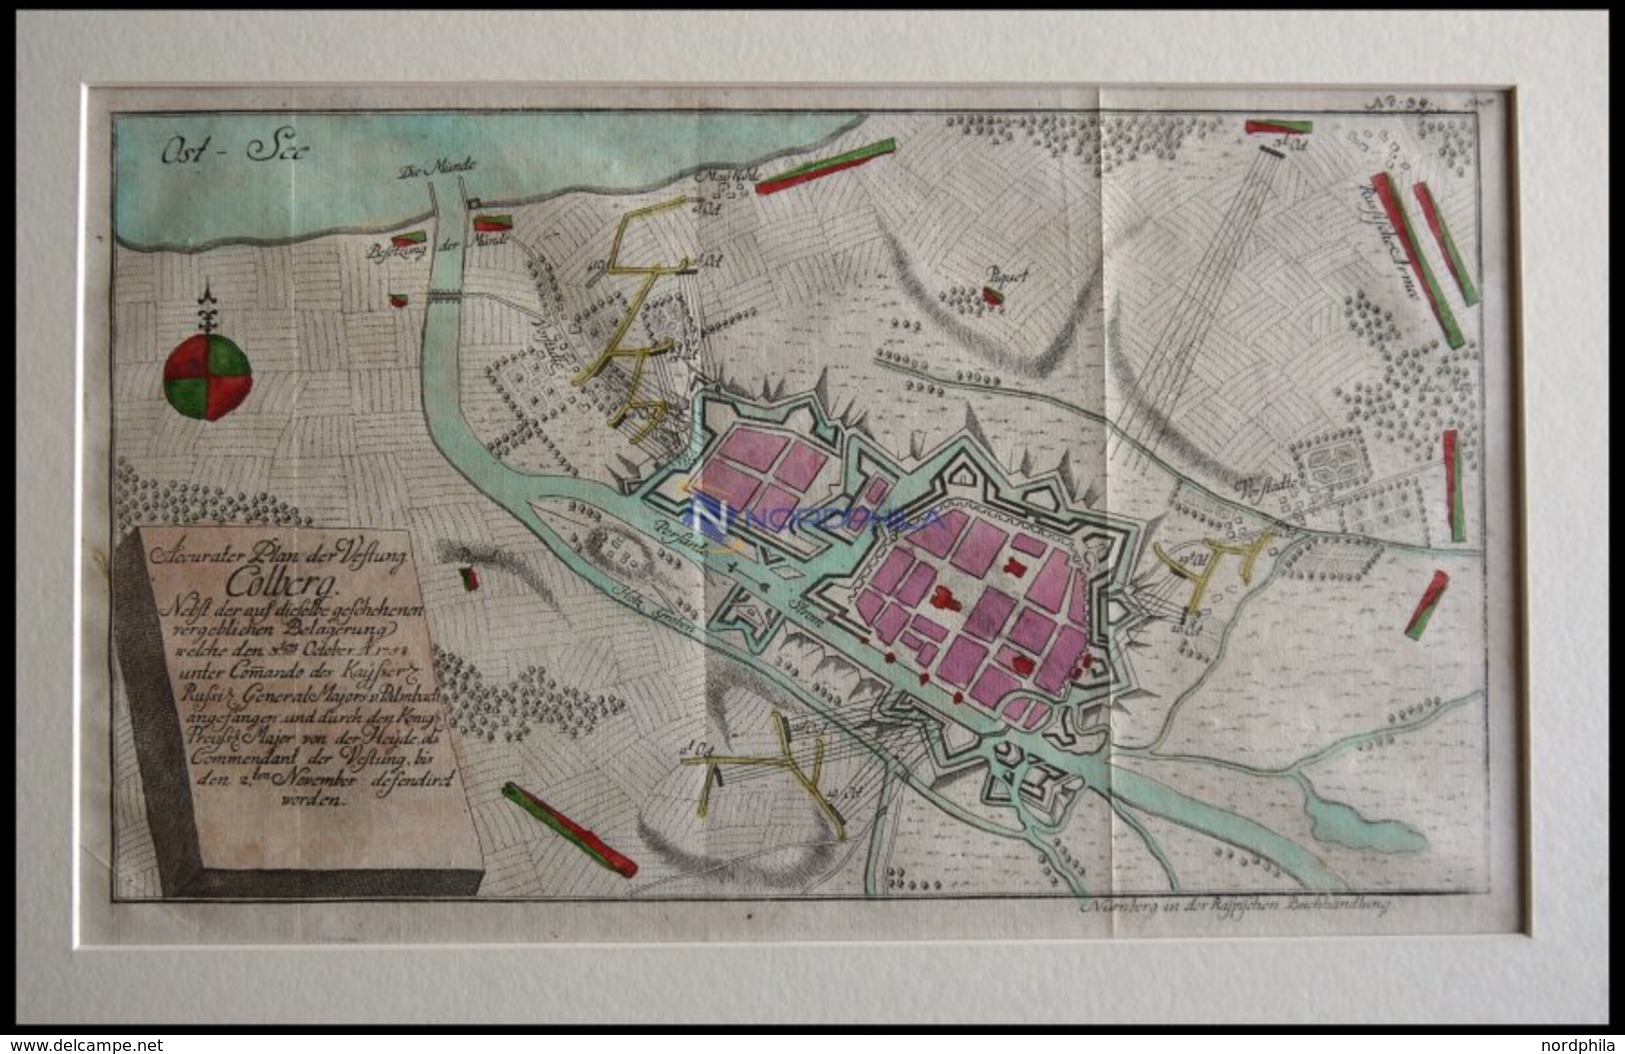 COLBERG, Festungsplan Der Belagerung Vom 3.10.1758, Altkolorierter Kupferstich Bei Raspische Buchhandlung 1760 - Litografía